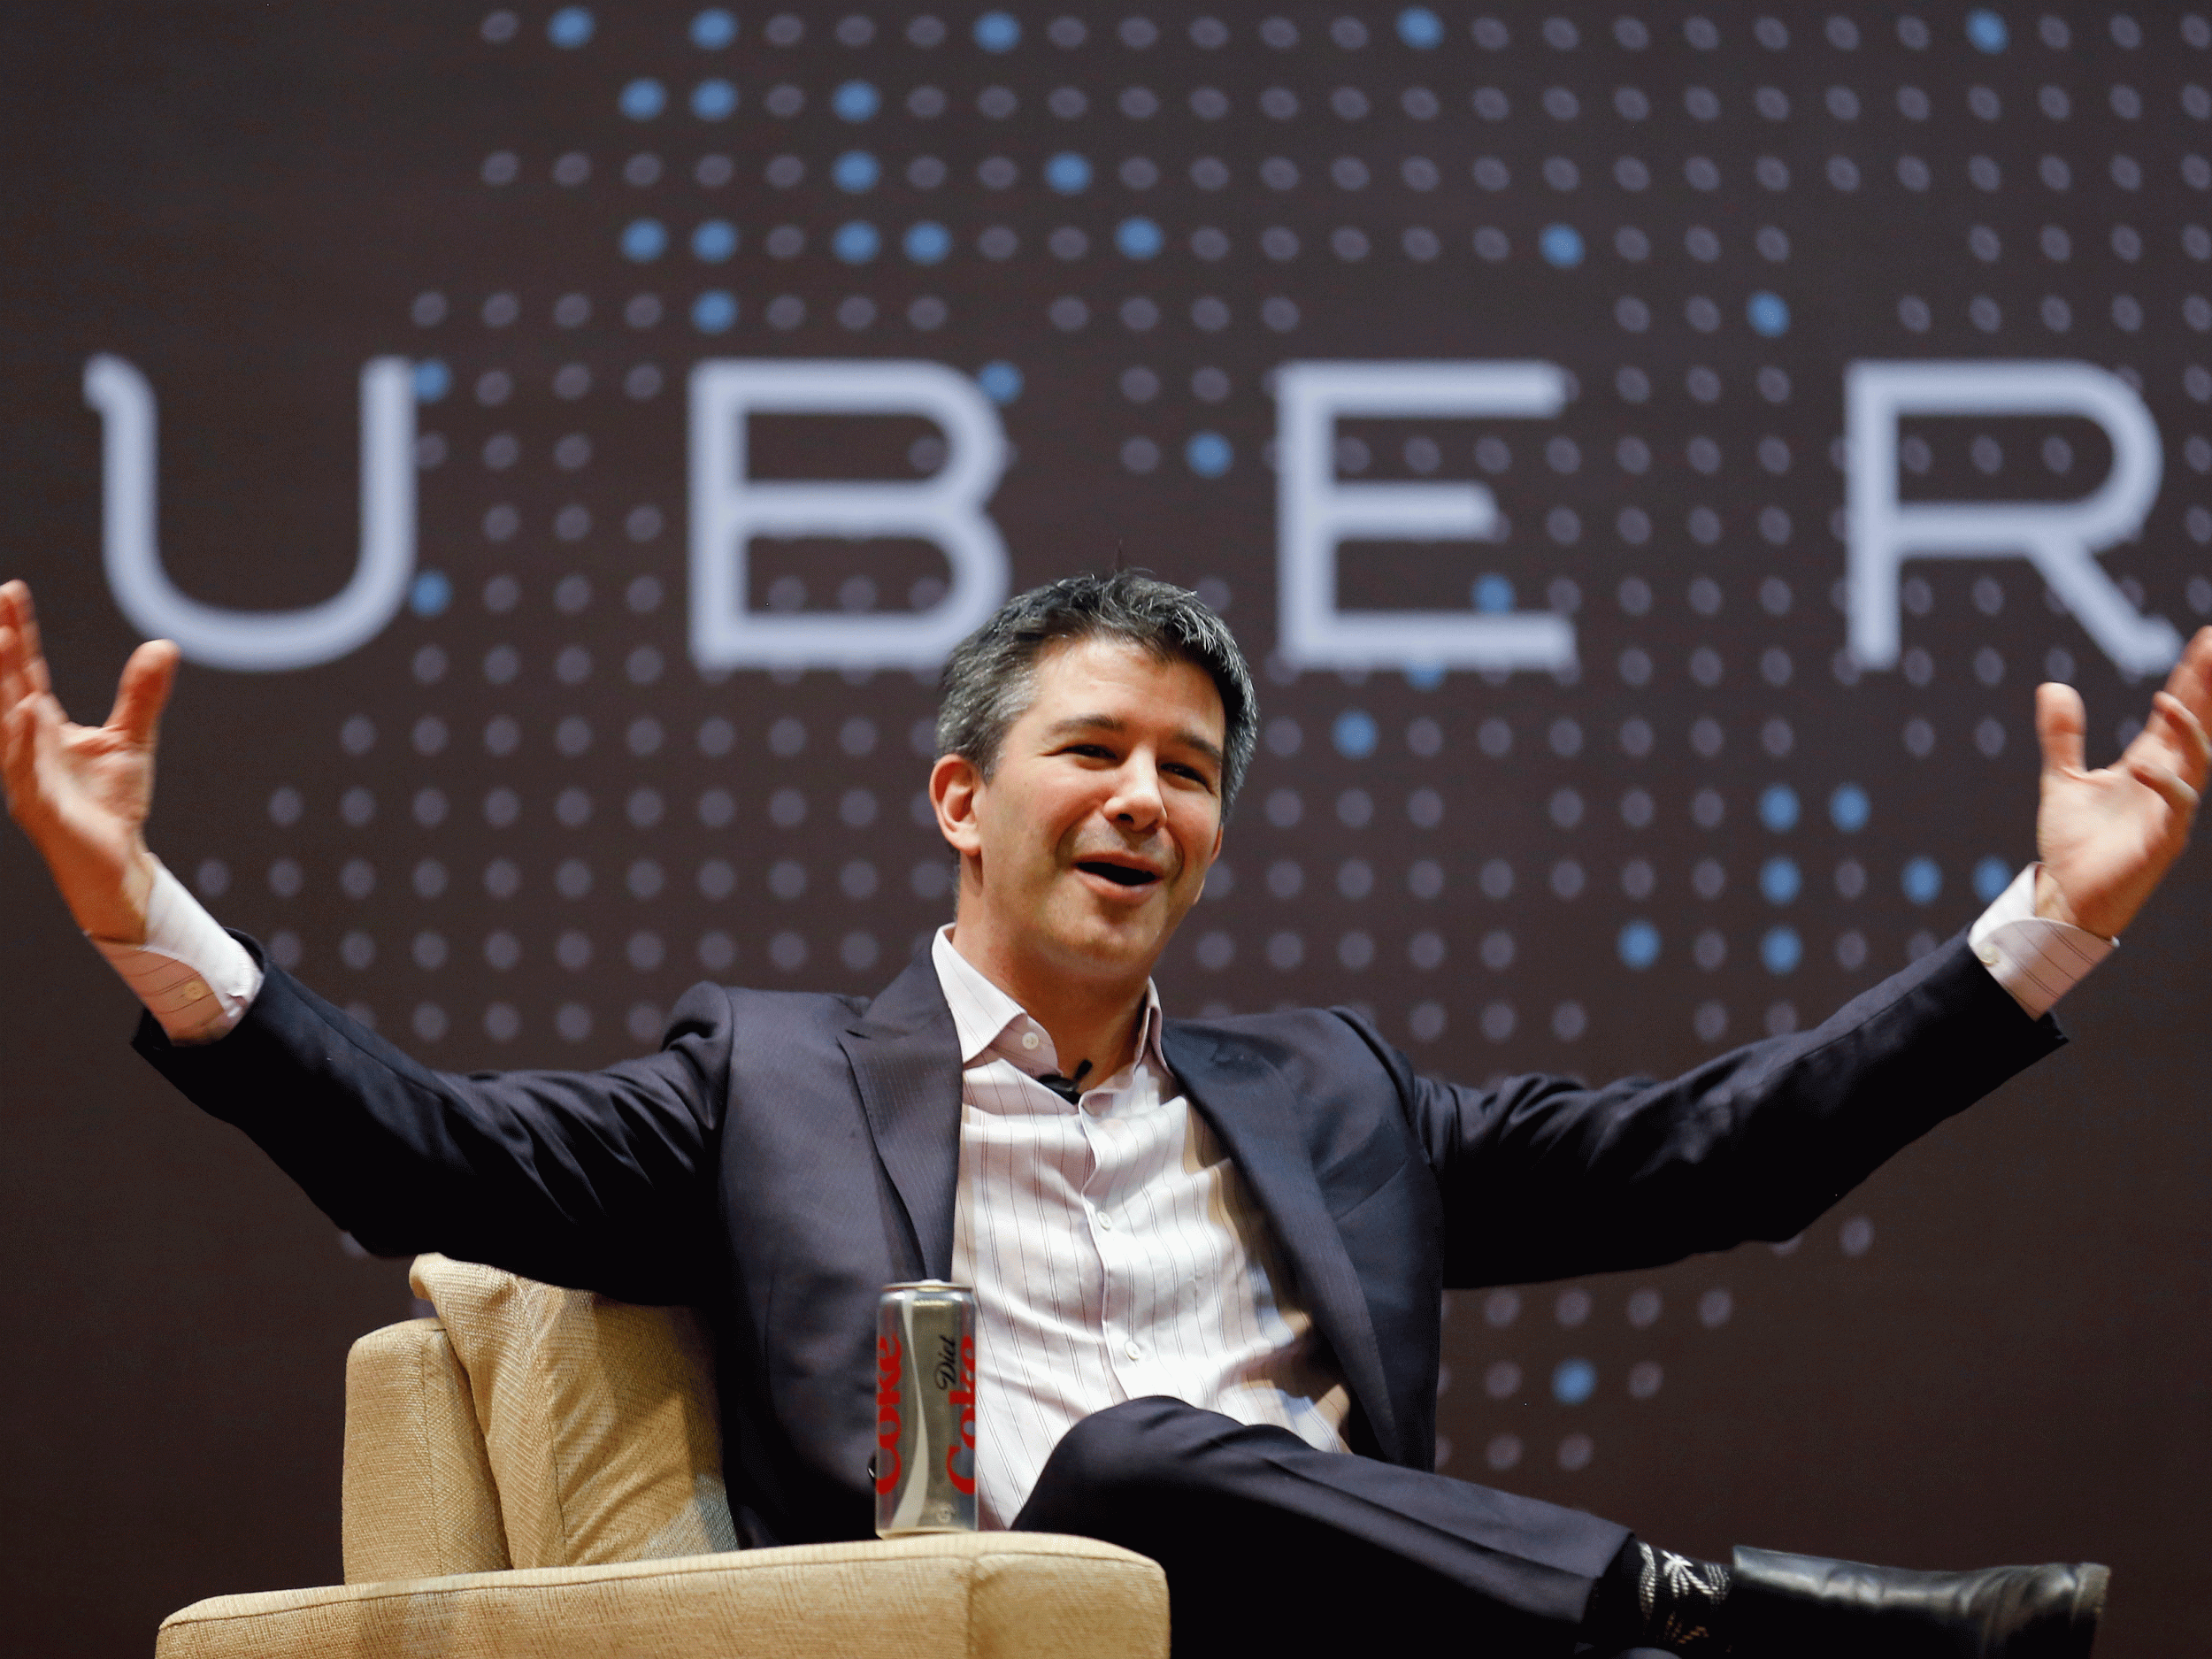 El CEO de Uber, Travis Kalanick, tiene un viaje lleno de baches, pero su mirada sigue puesta en el mundo.